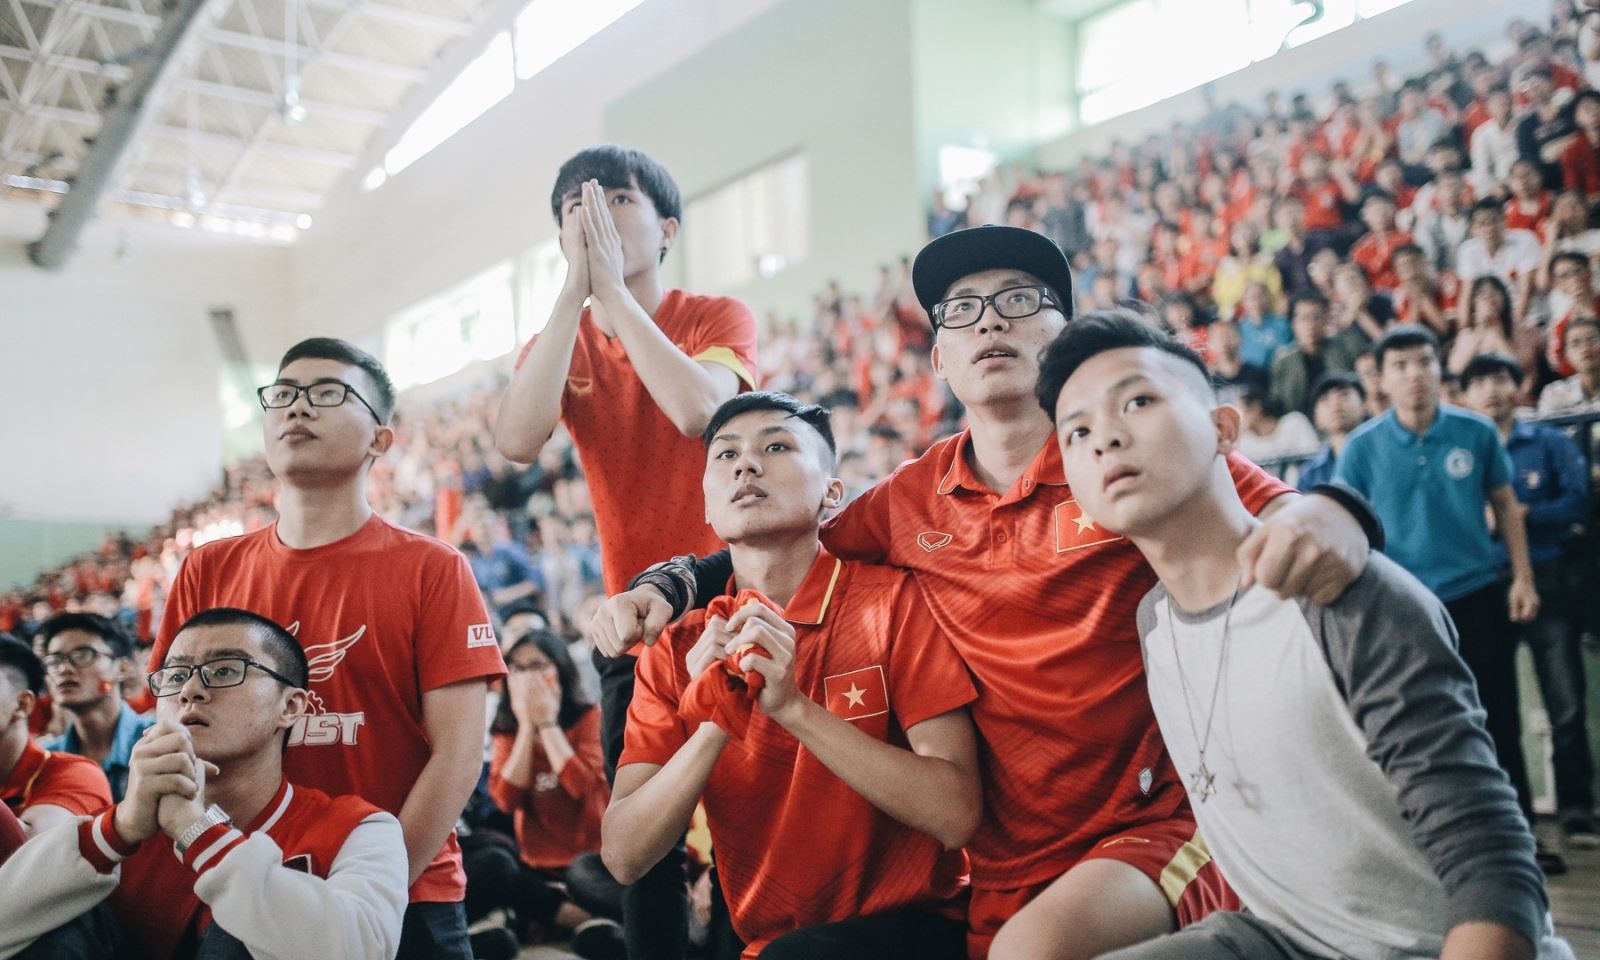 Đi một vòng lớn, U23 Việt Nam đã chạm đến sâu thẳm trái tim NHM rồi